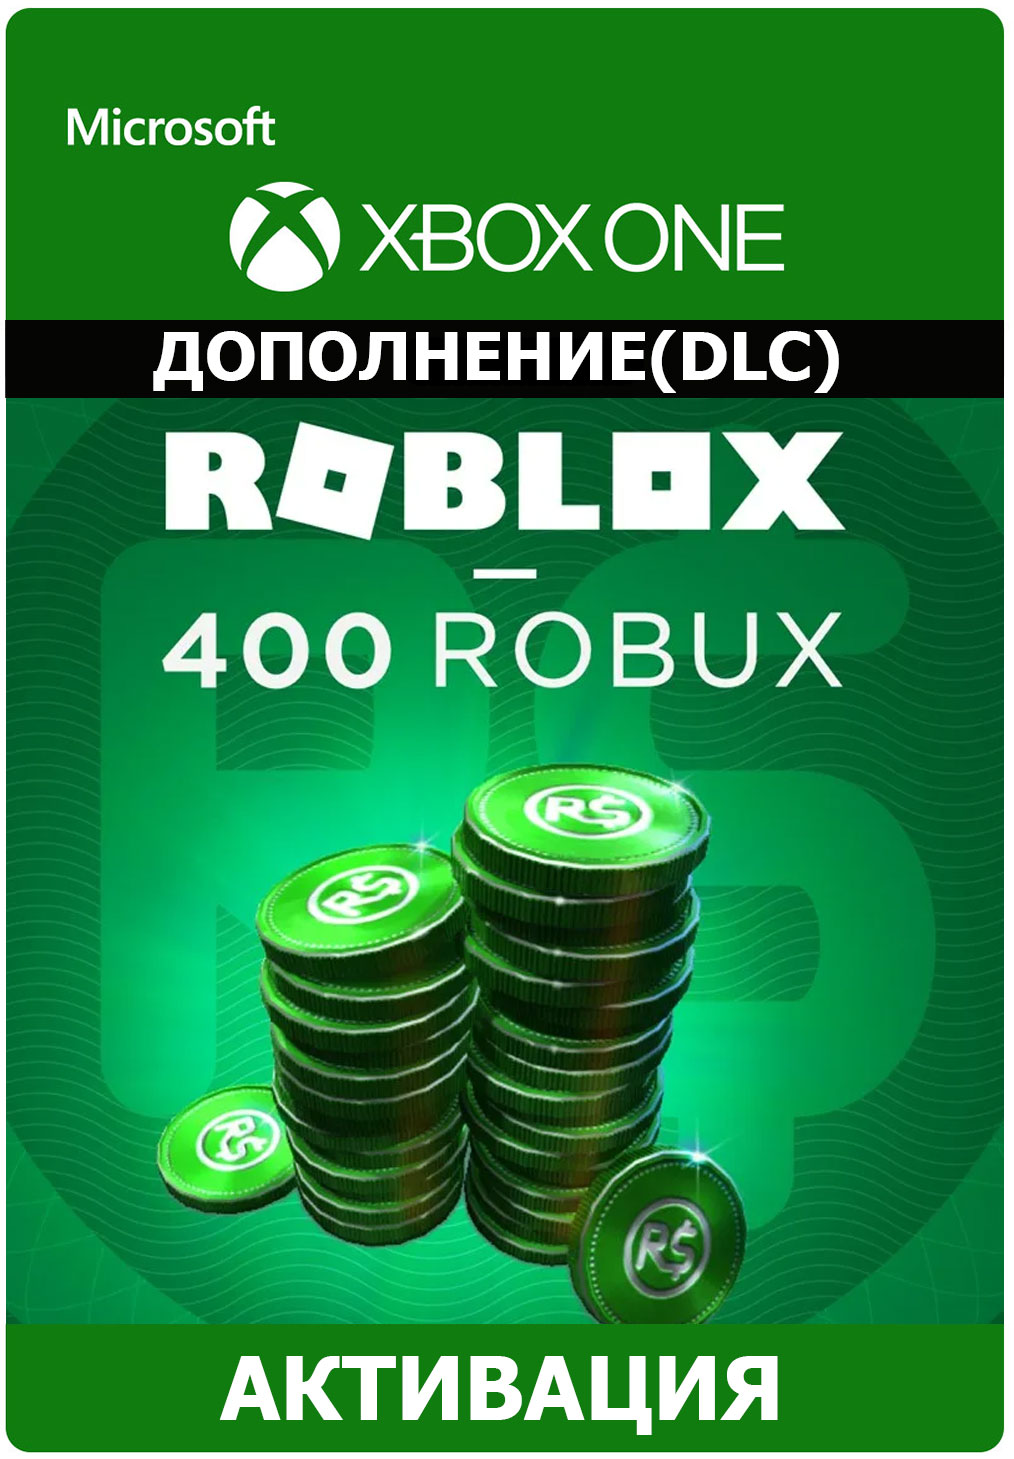 Comprar o 400 Robux para Xbox